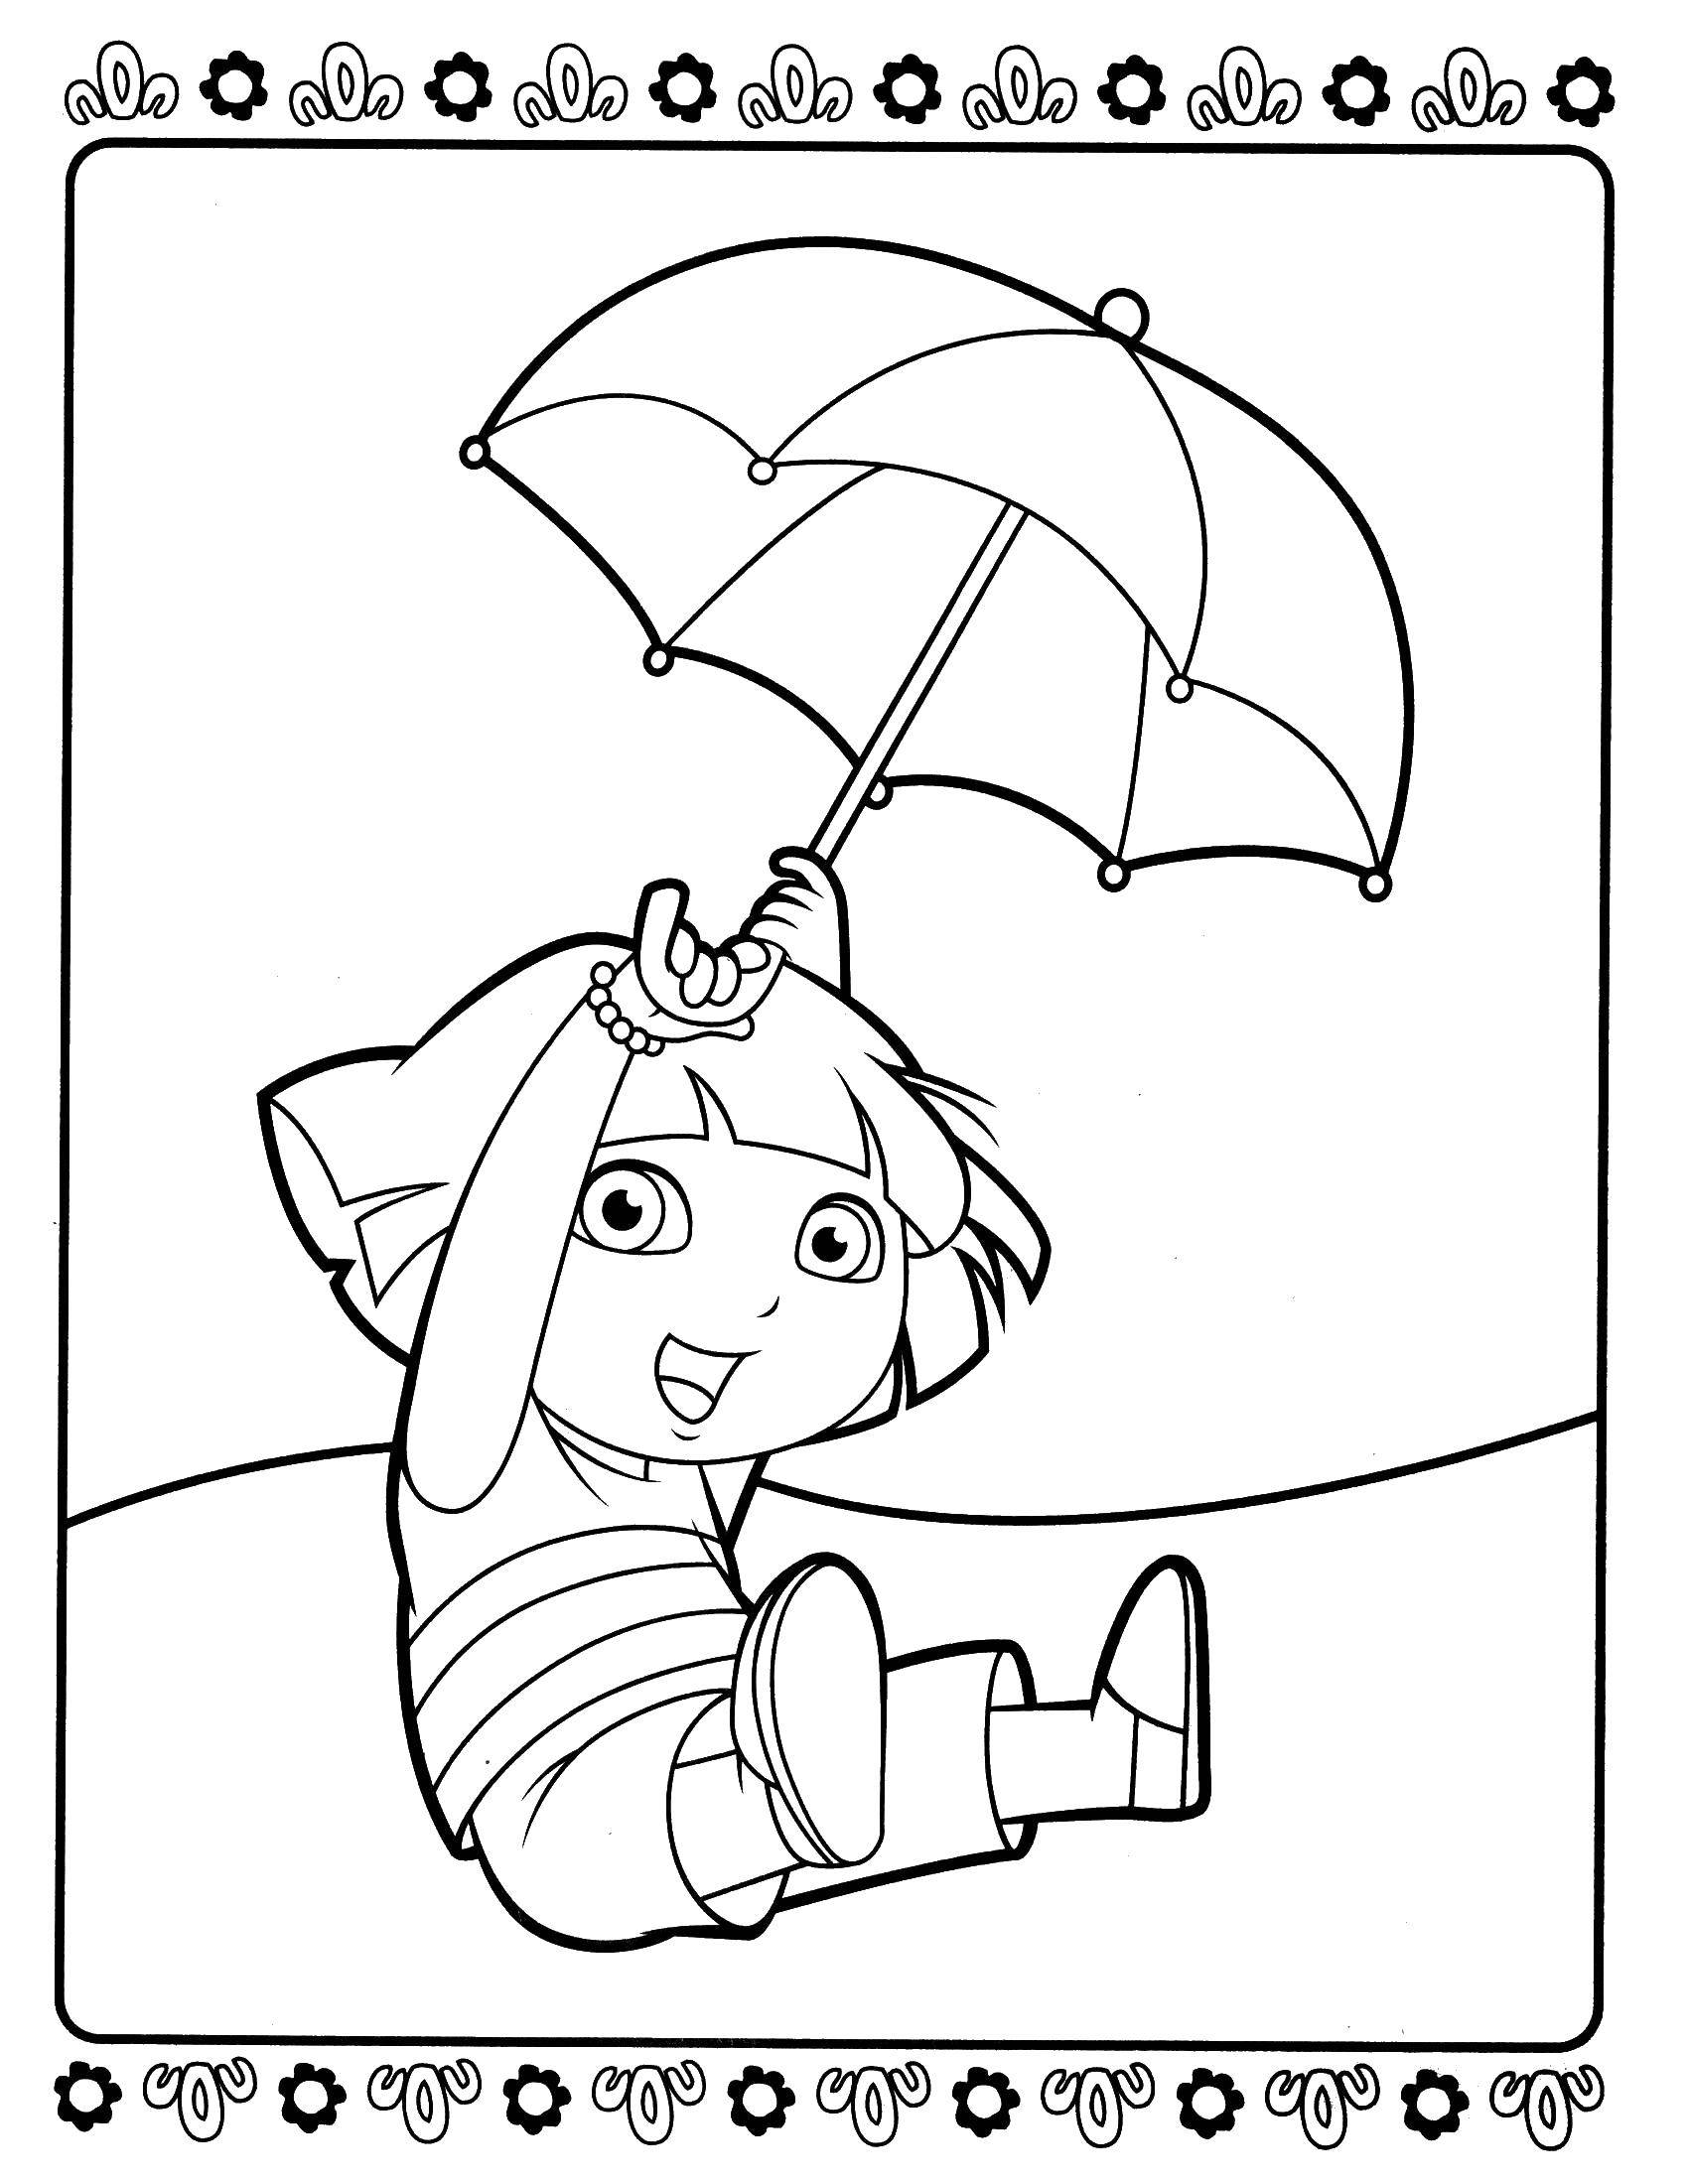 Опис: розмальовки  Даша летить на парасольці. Категорія: даша мандрівниця. Теги:  Персонаж з мультфільму.